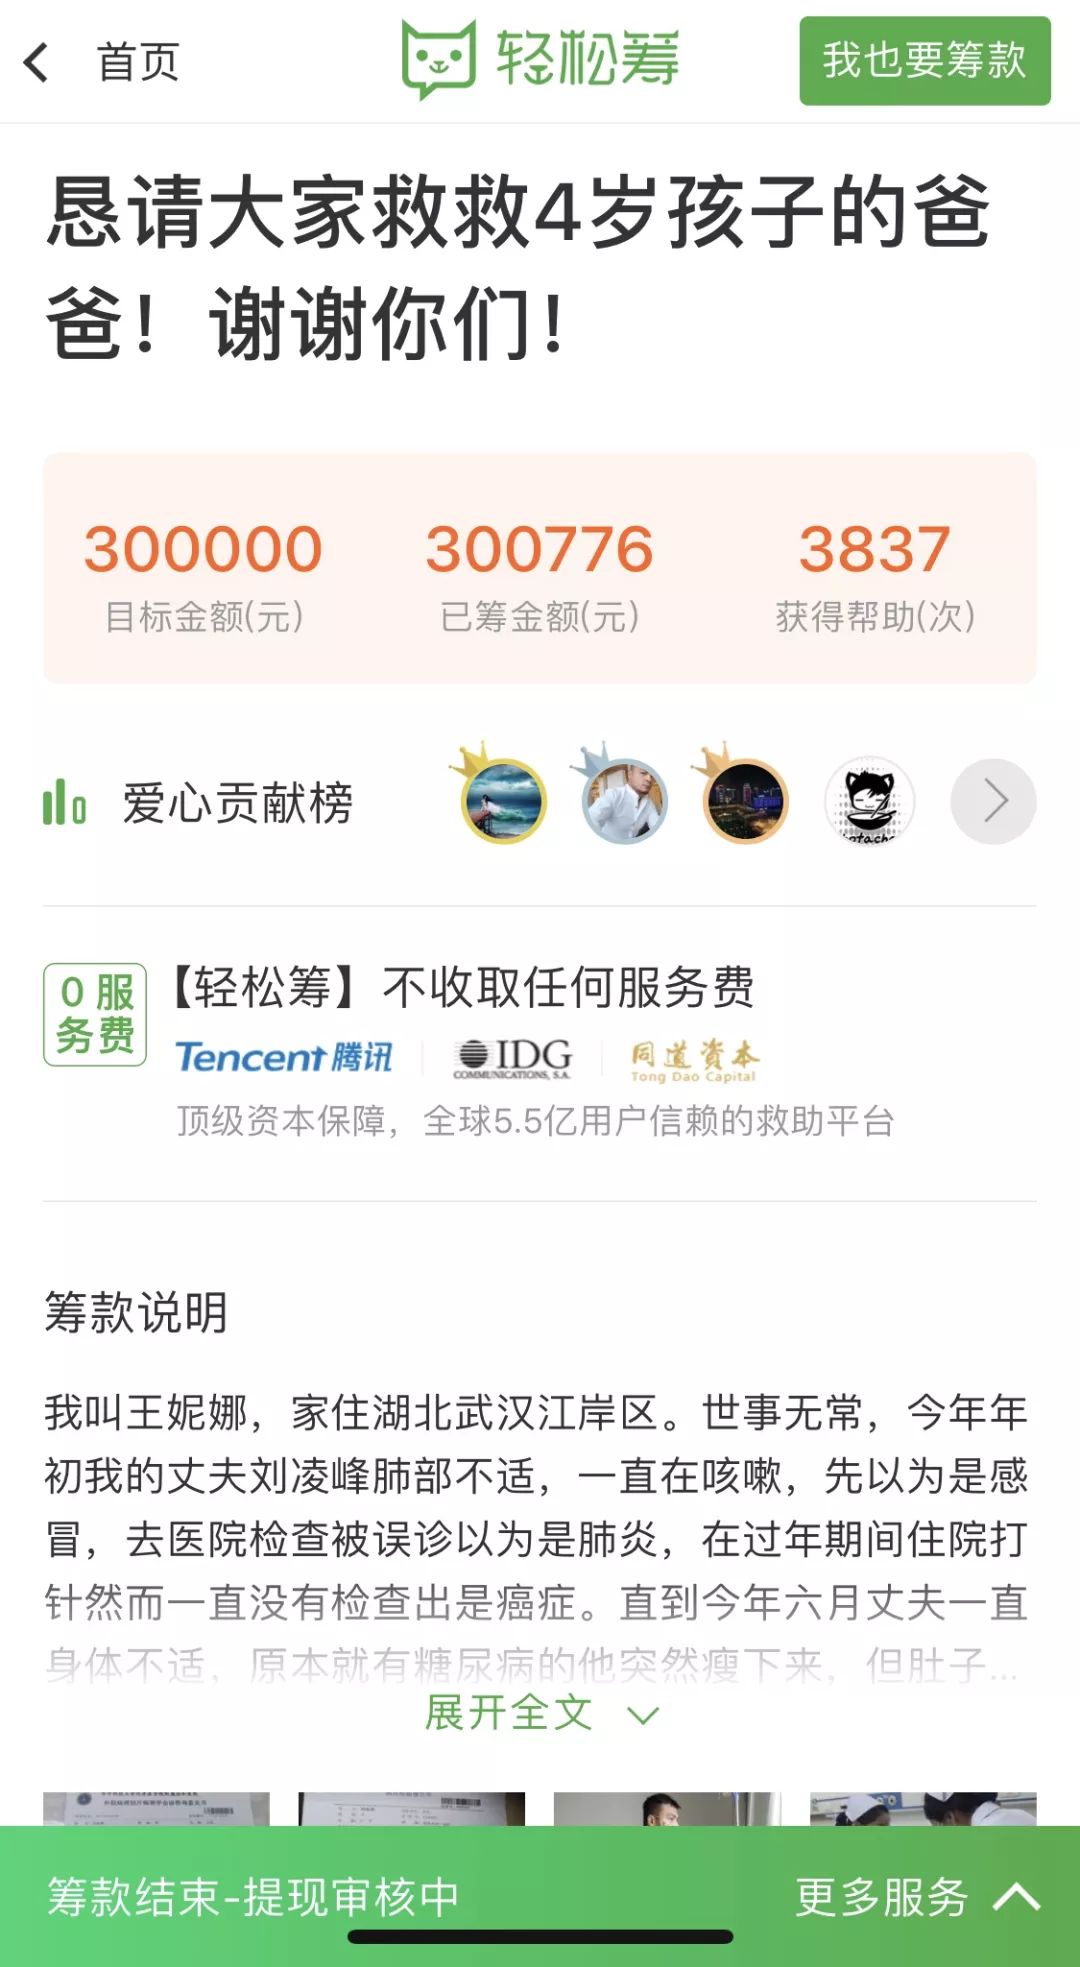 刘凌峰的妻子为他在轻松筹上筹款30万